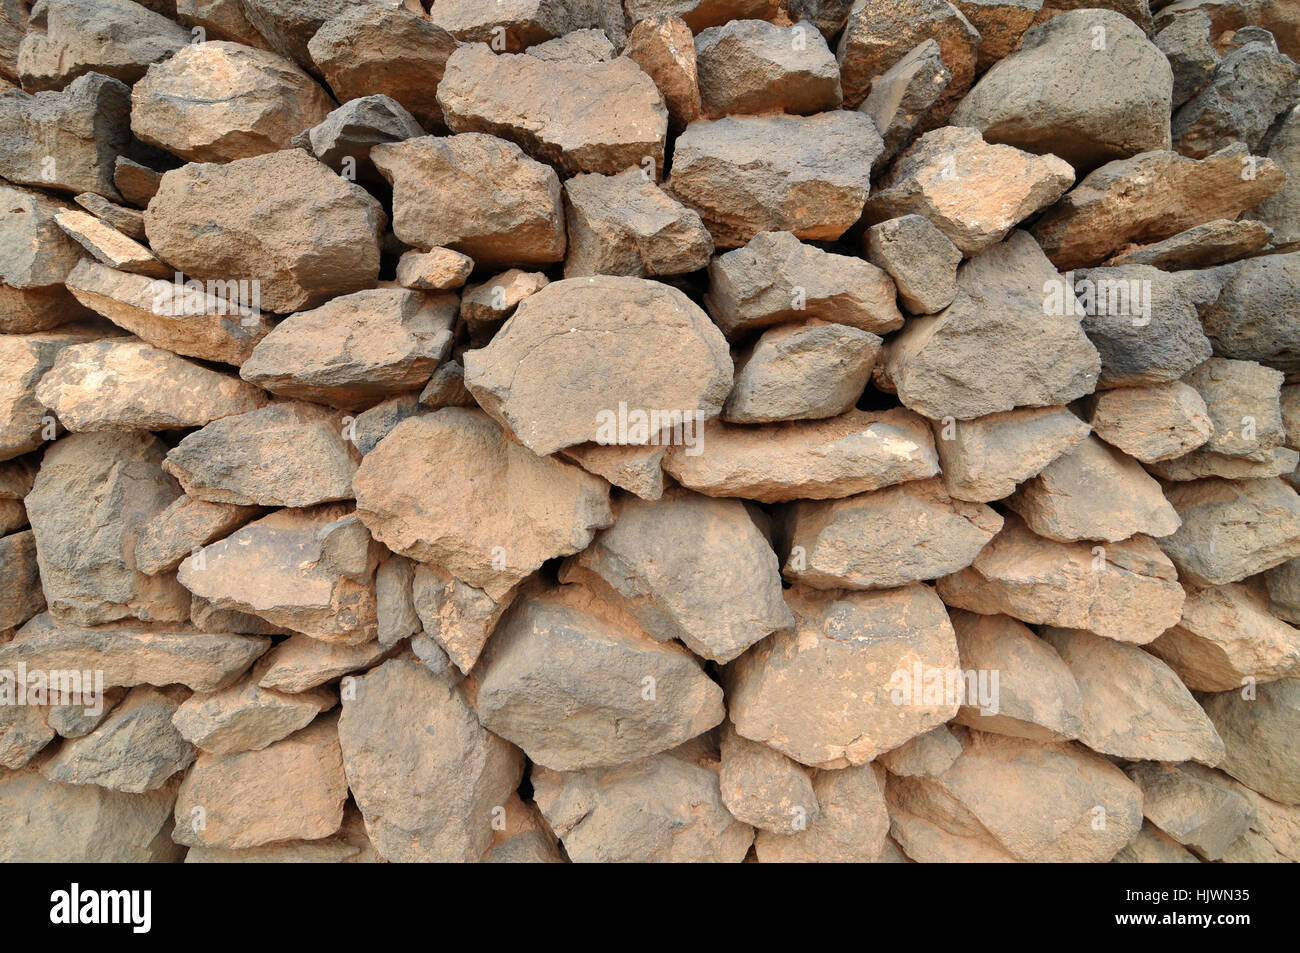 Rock, mur, bloc, vieux, ancien, solide, texture, maison, édifice, construction, Banque D'Images